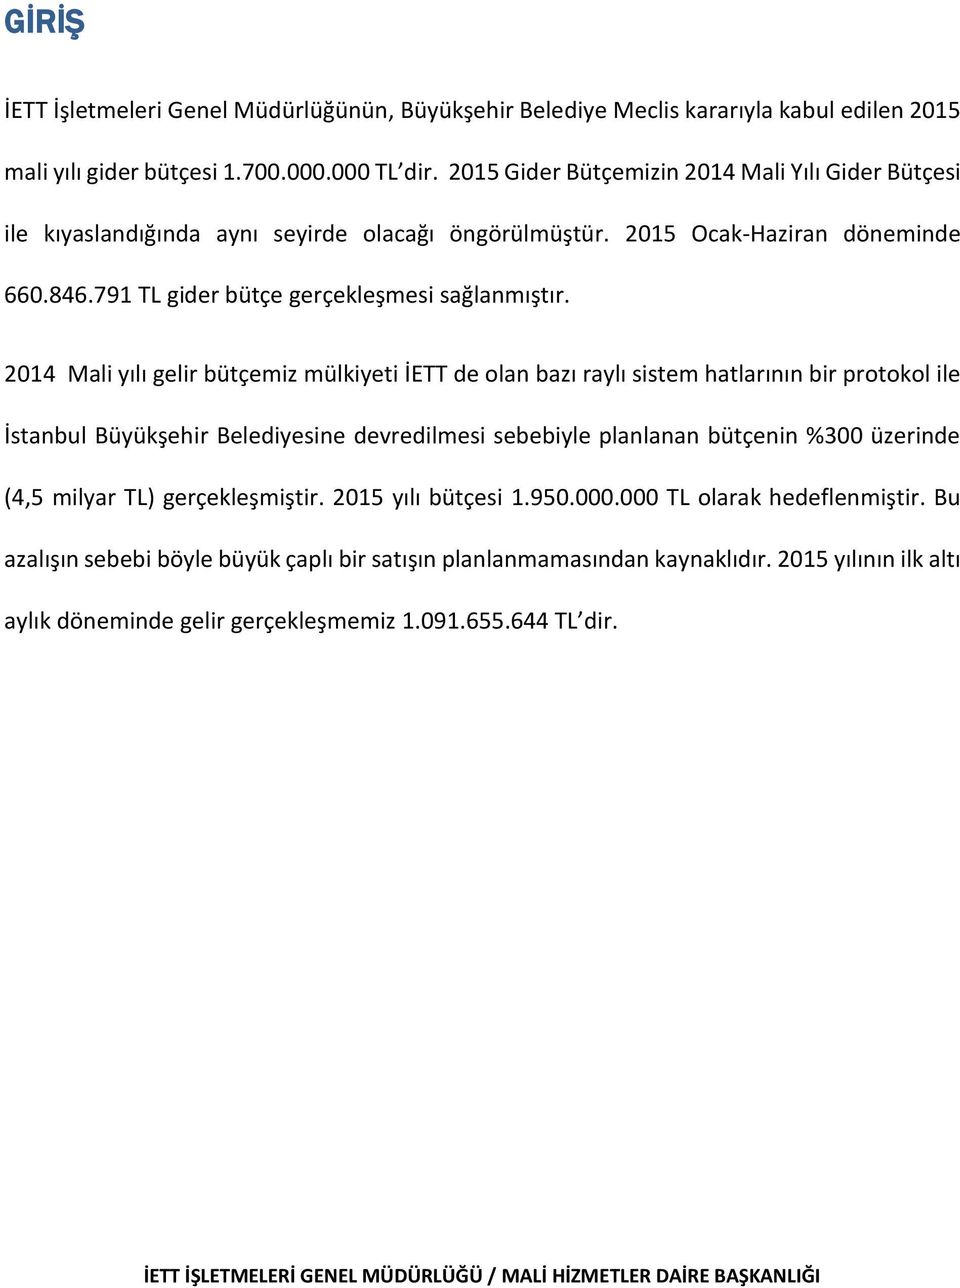 2014 Mali yılı gelir bütçemiz mülkiyeti İETT de olan bazı raylı sistem hatlarının bir protokol ile İstanbul Büyükşehir Belediyesine devredilmesi sebebiyle planlanan bütçenin %300 üzerinde (4,5